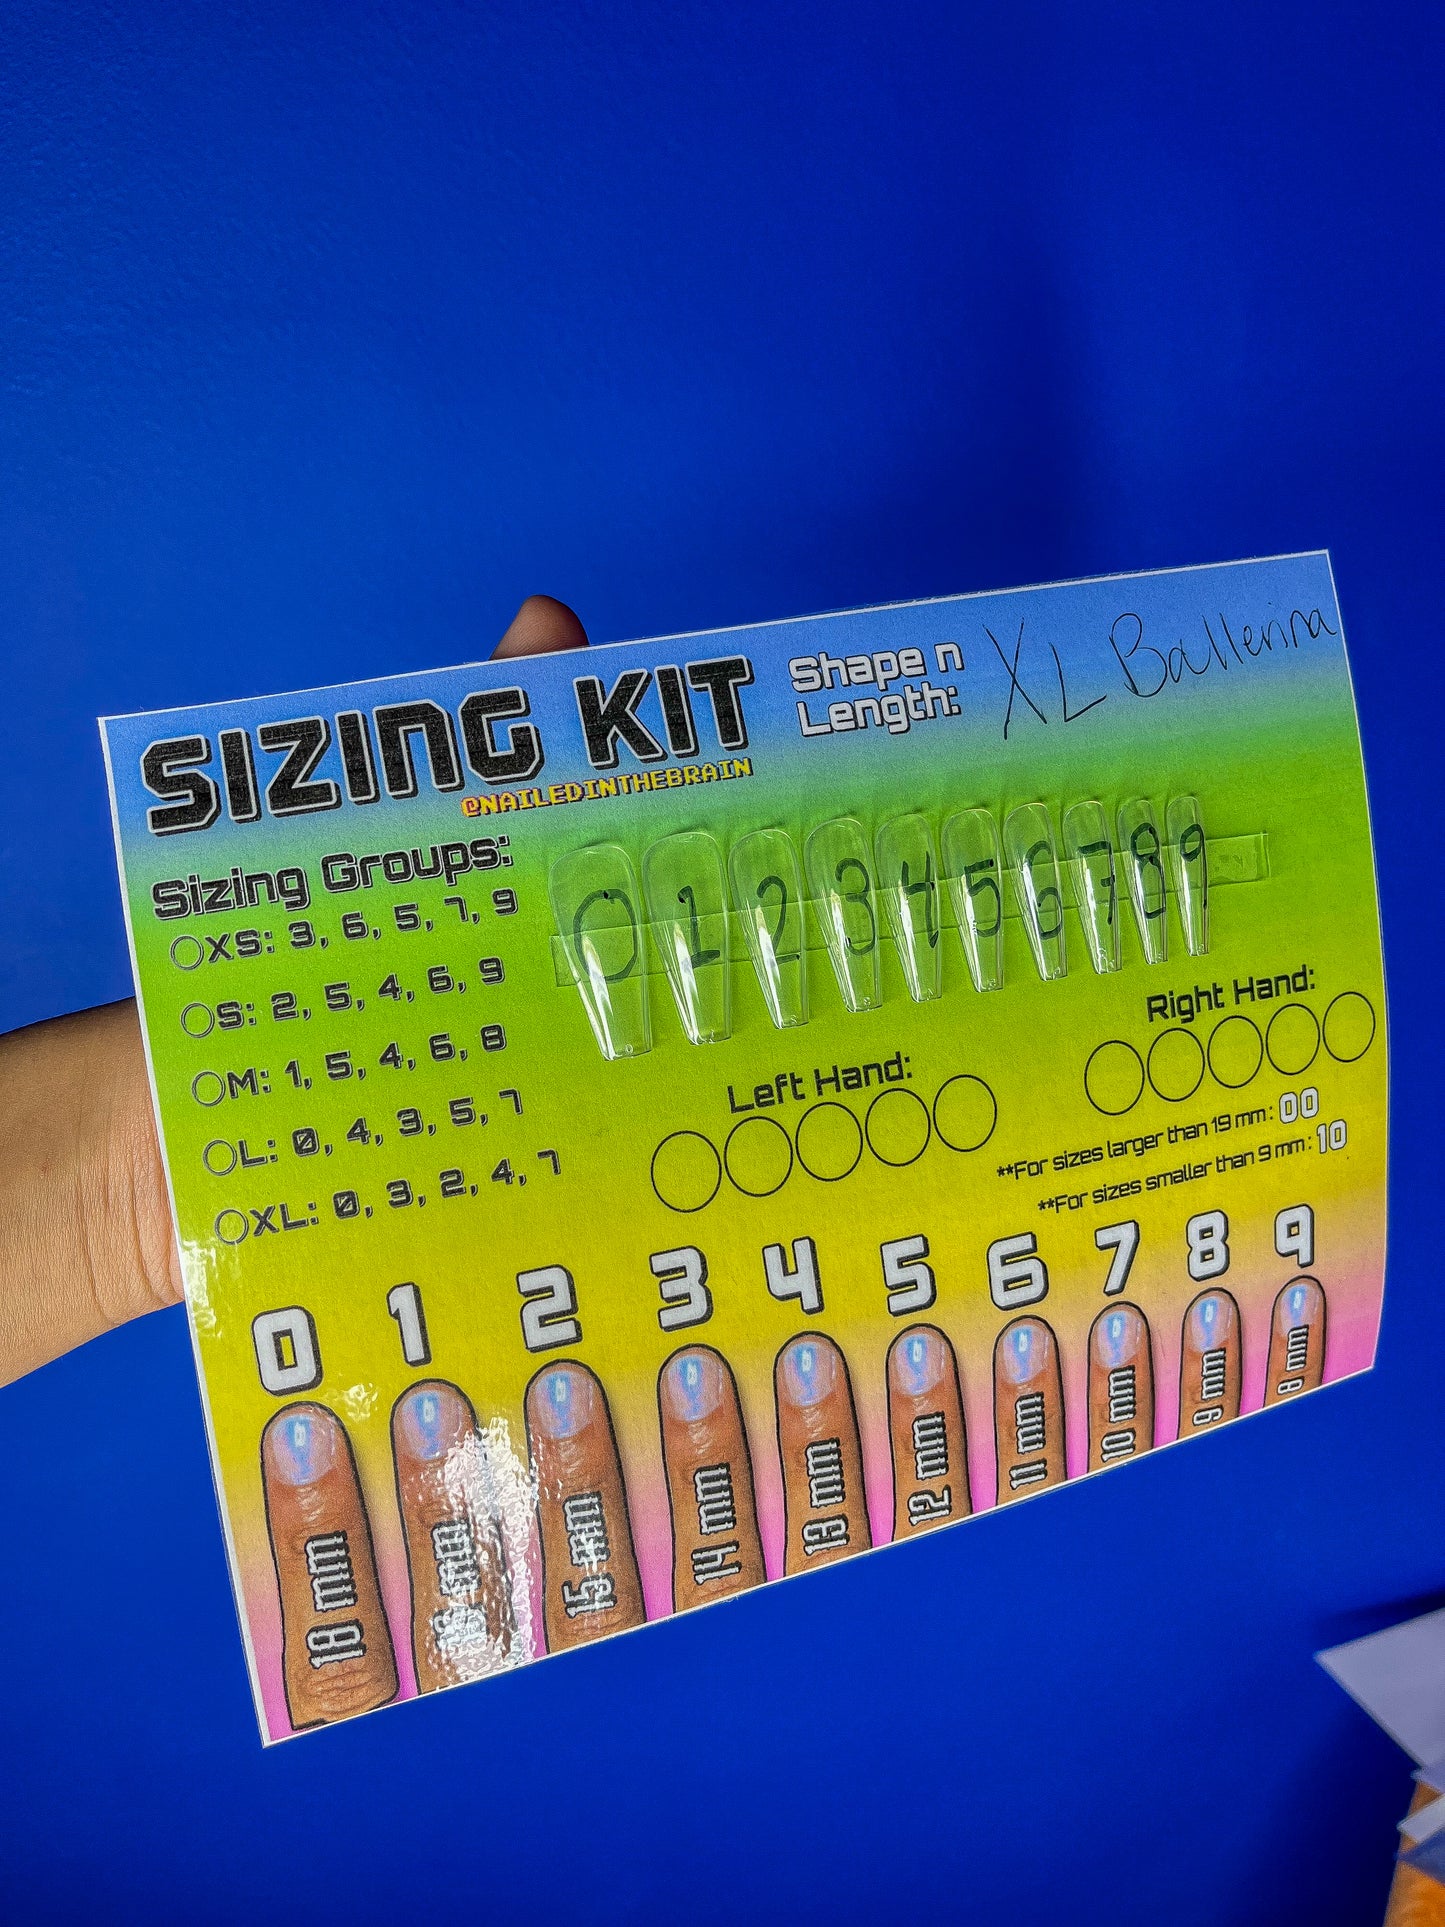 Sizing Kits